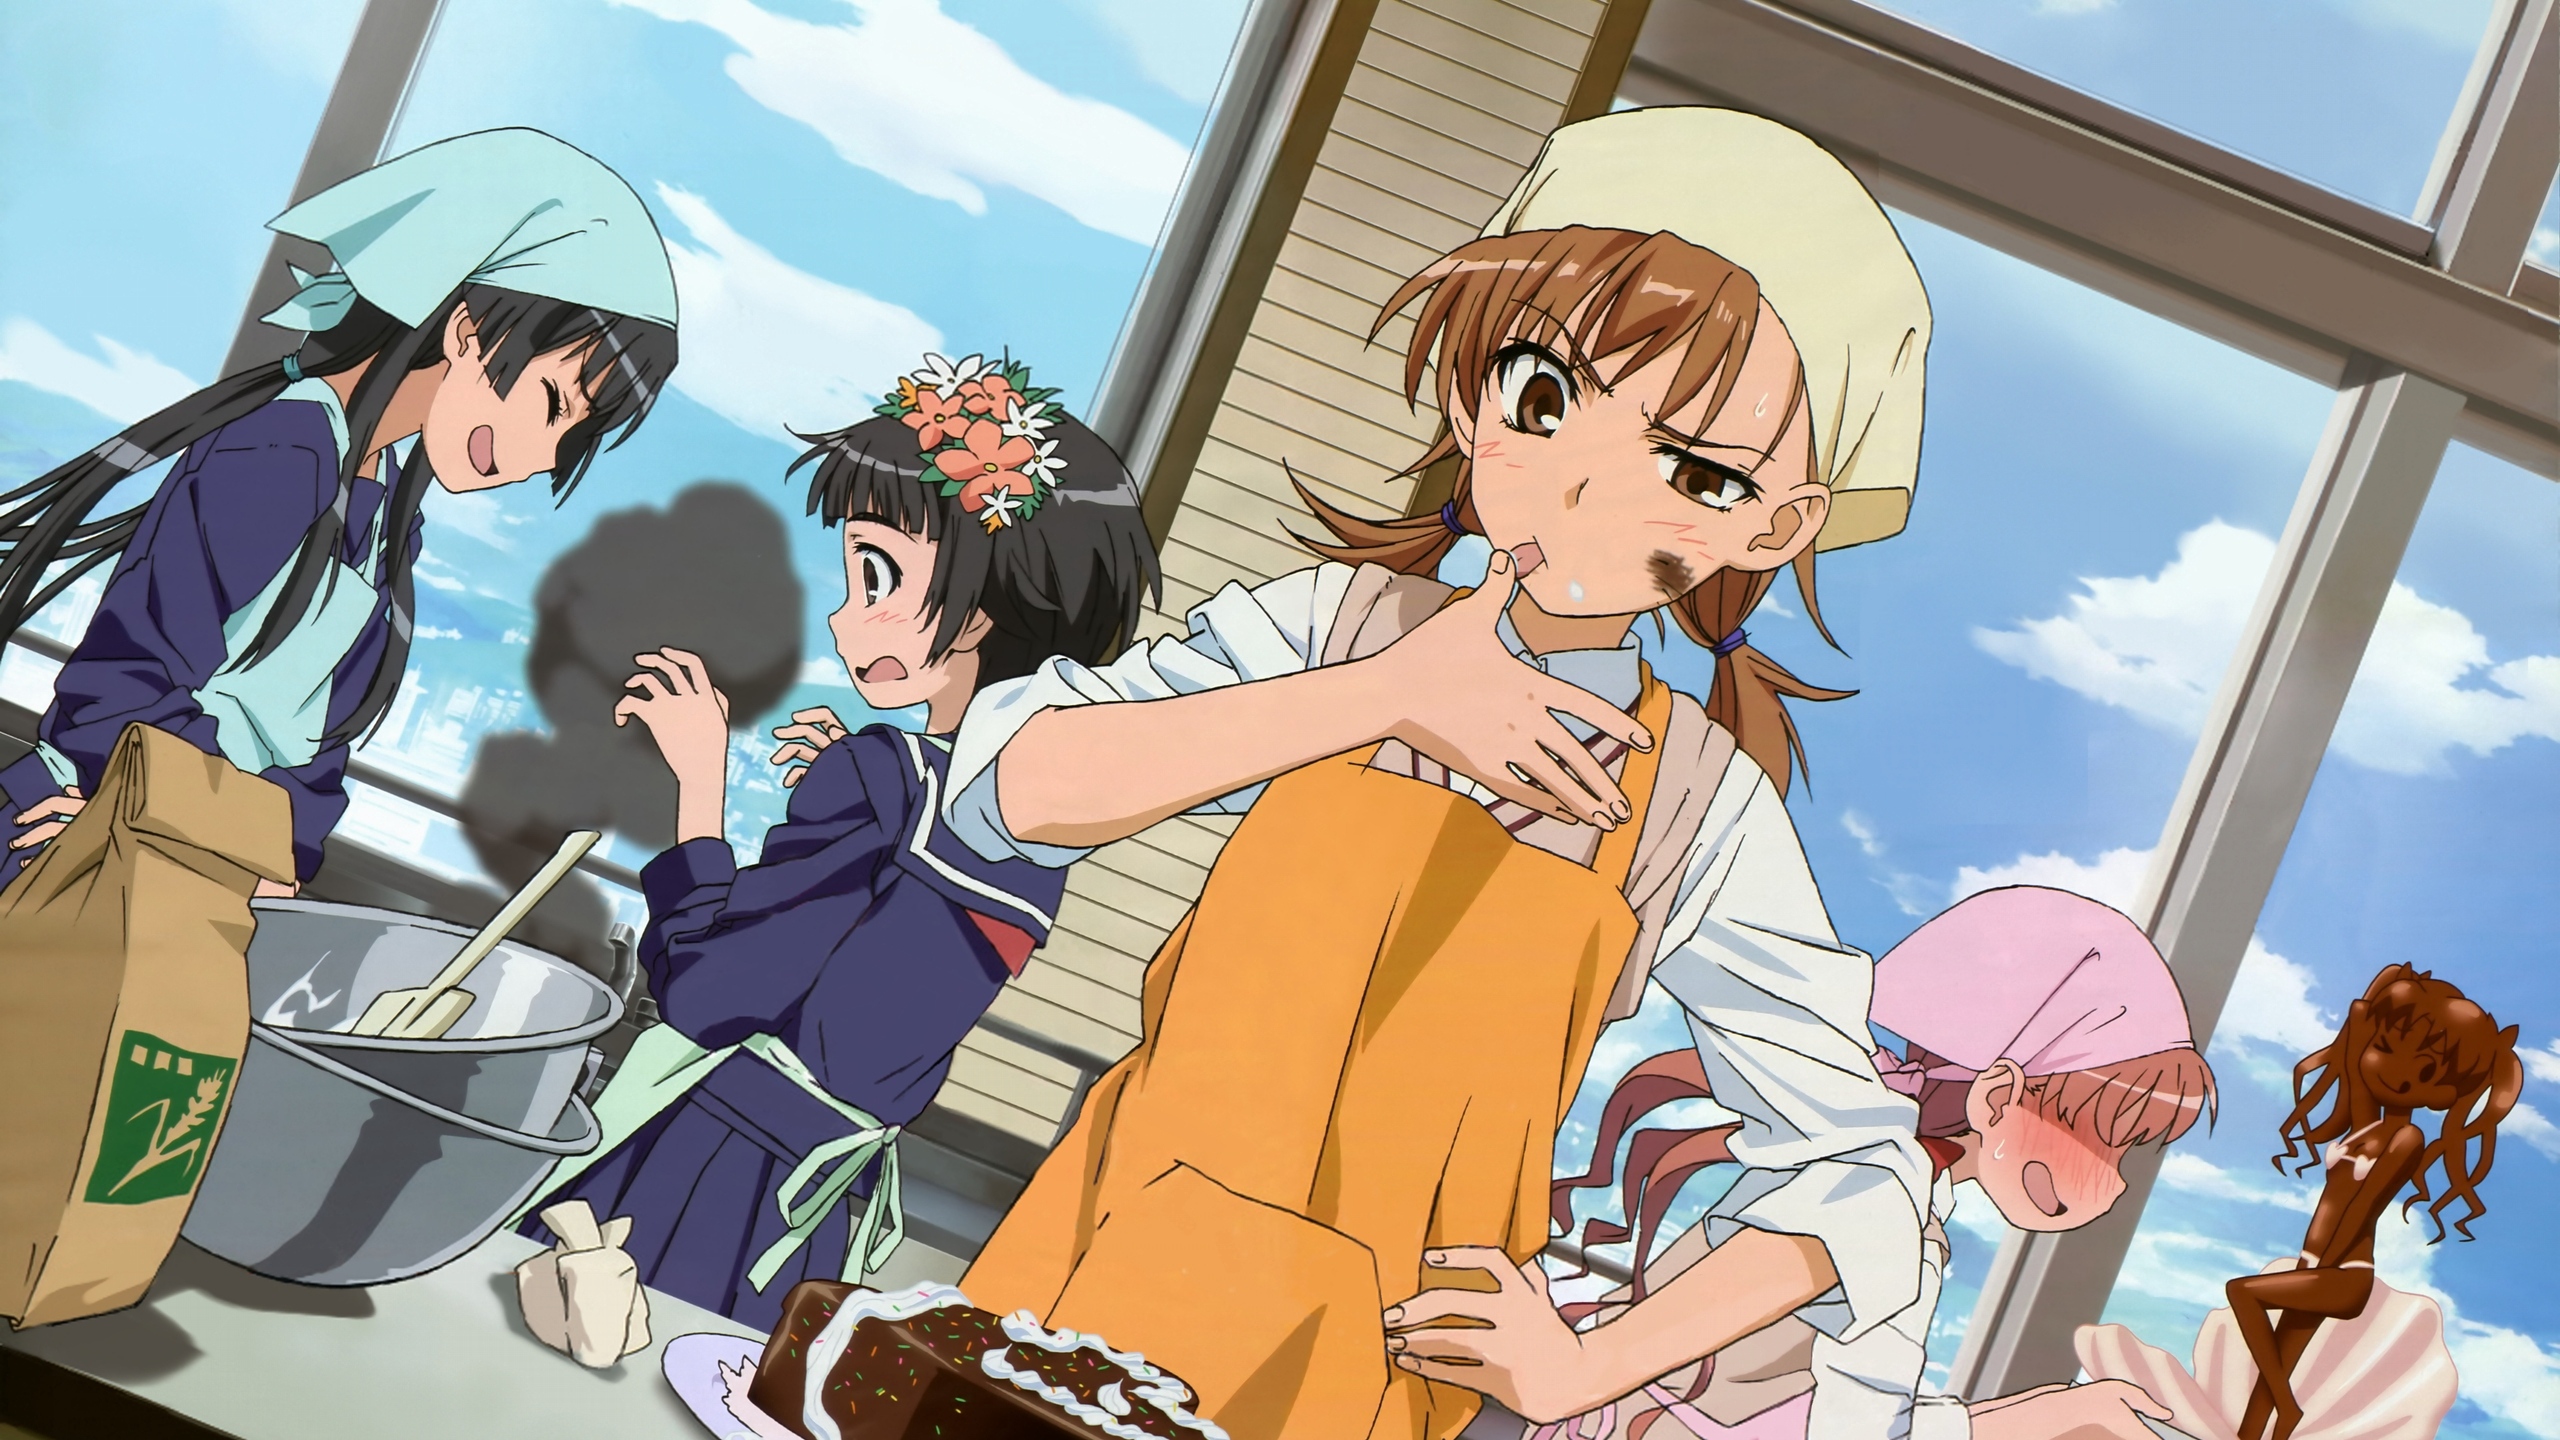 Download wallpaper 2560x1440 anime, girls, food, cake